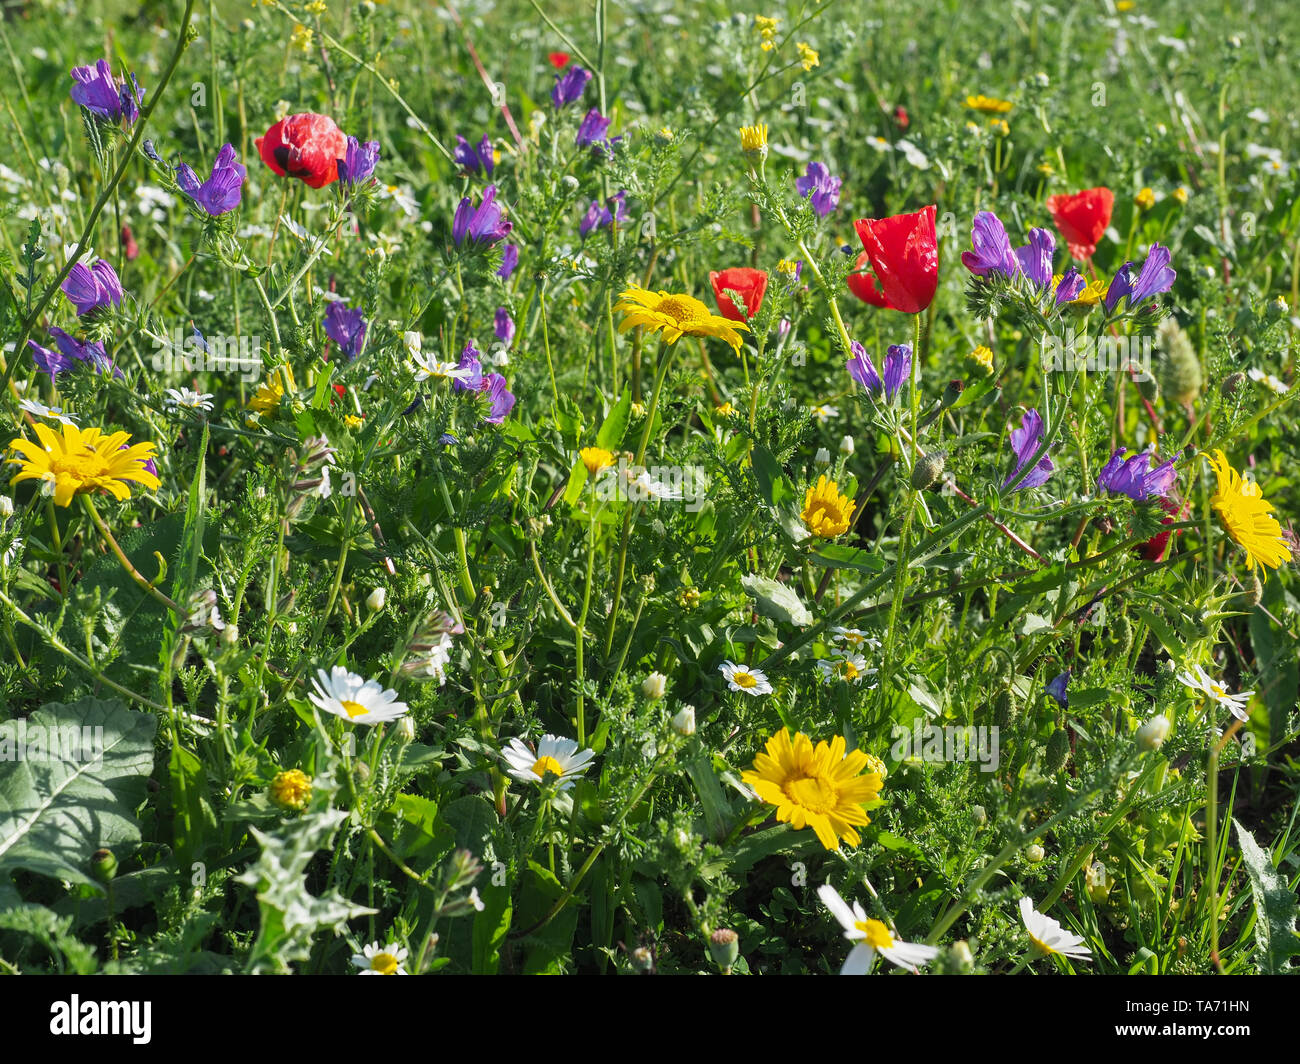 Papavero rosso fiori viola Echium vulgare o viper dell bugloss, Daisy bianca, gialla Anthemis tinctoria o camomilla in fiore nel prato. Campo colorato. Foto Stock